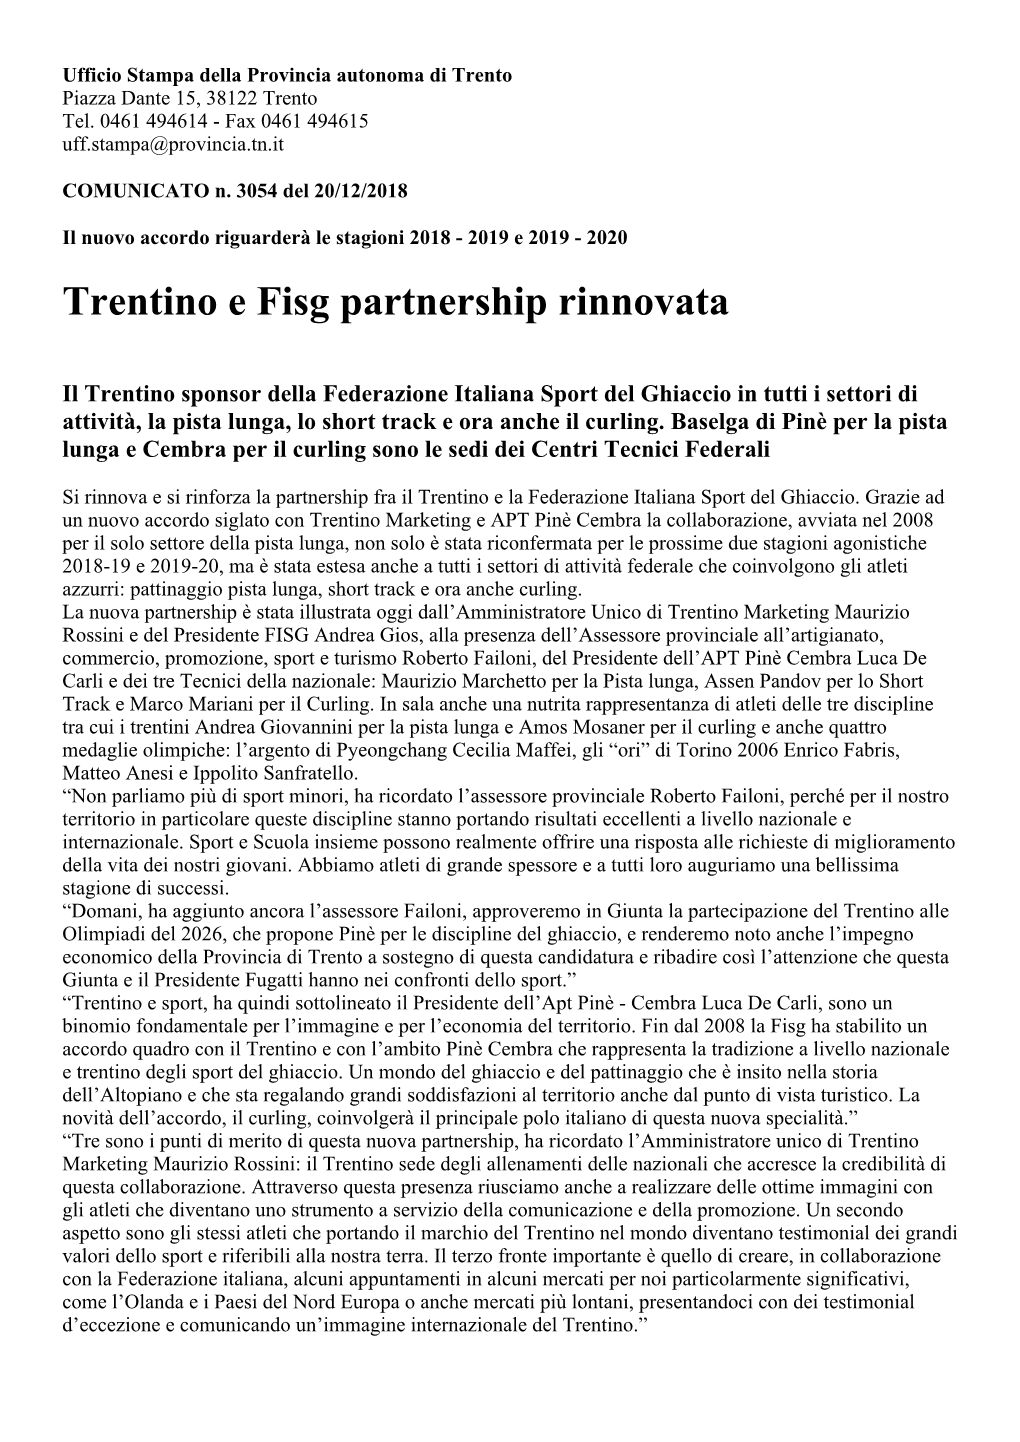 Trentino E Fisg Partnership Rinnovata